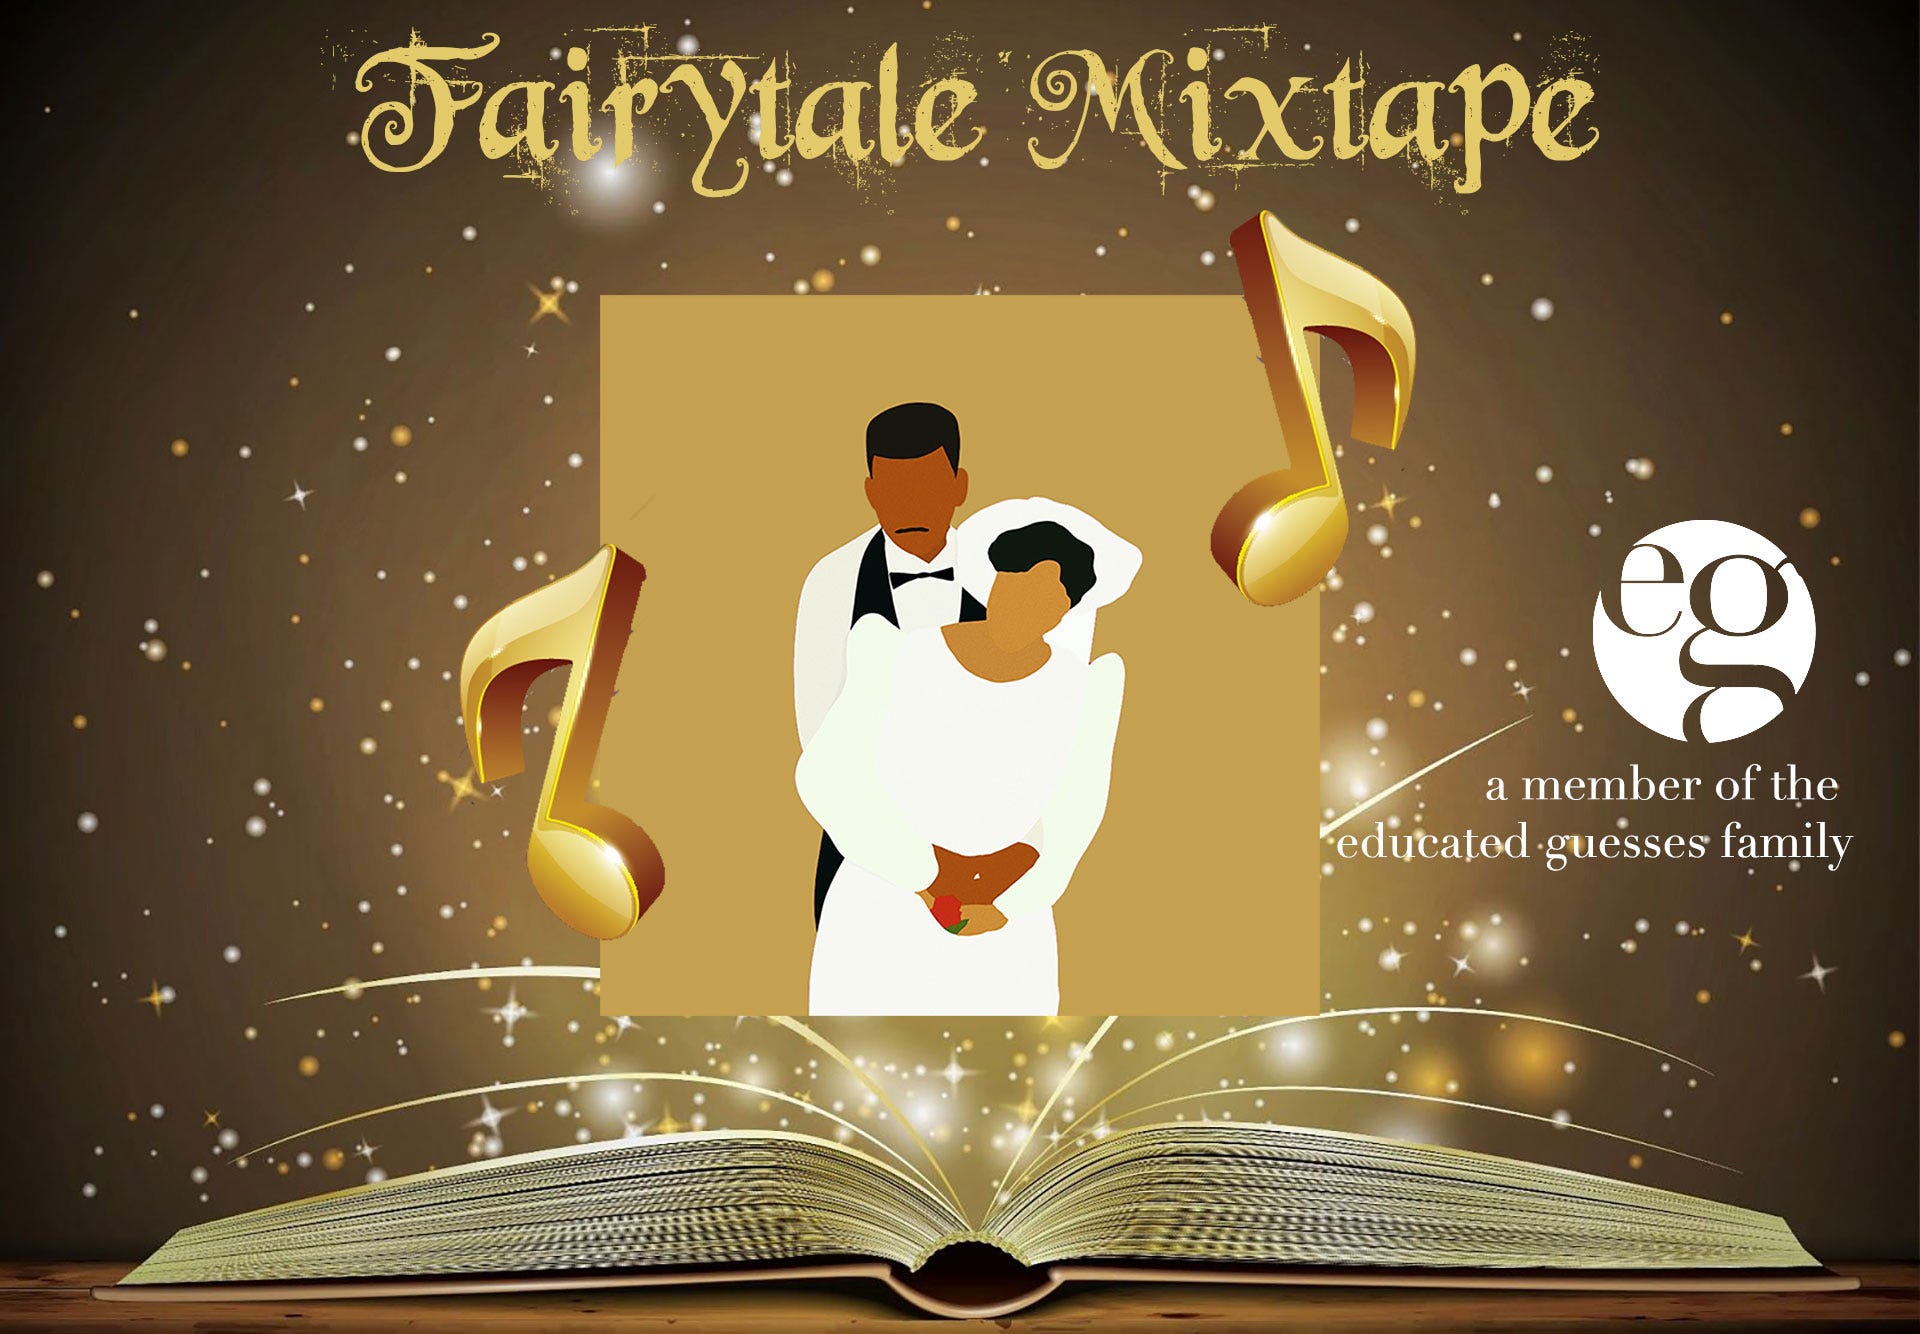 Fairytale Mixtape